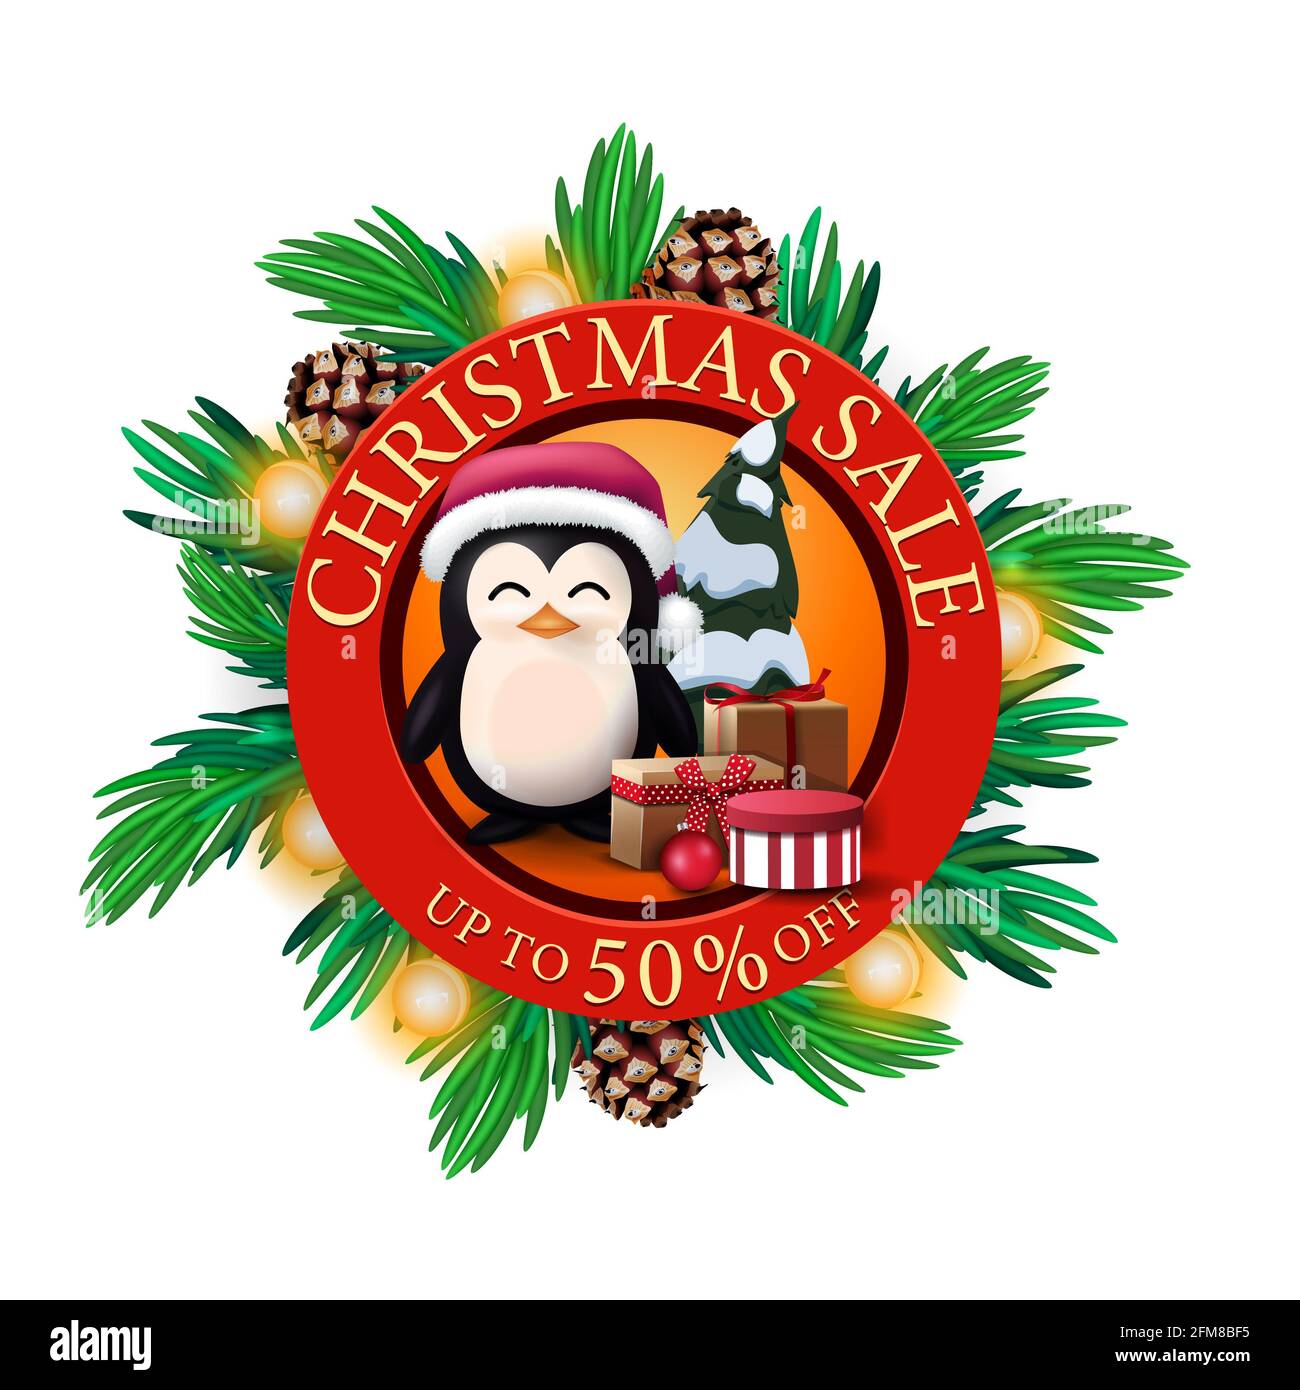 Solde de Noël, jusqu'à 50 rabais, bannière de réduction ronde rouge avec branches d'arbre de Noël, cônes, bulbes et pingouin en chapeau du Père Noël avec cadeaux Banque D'Images